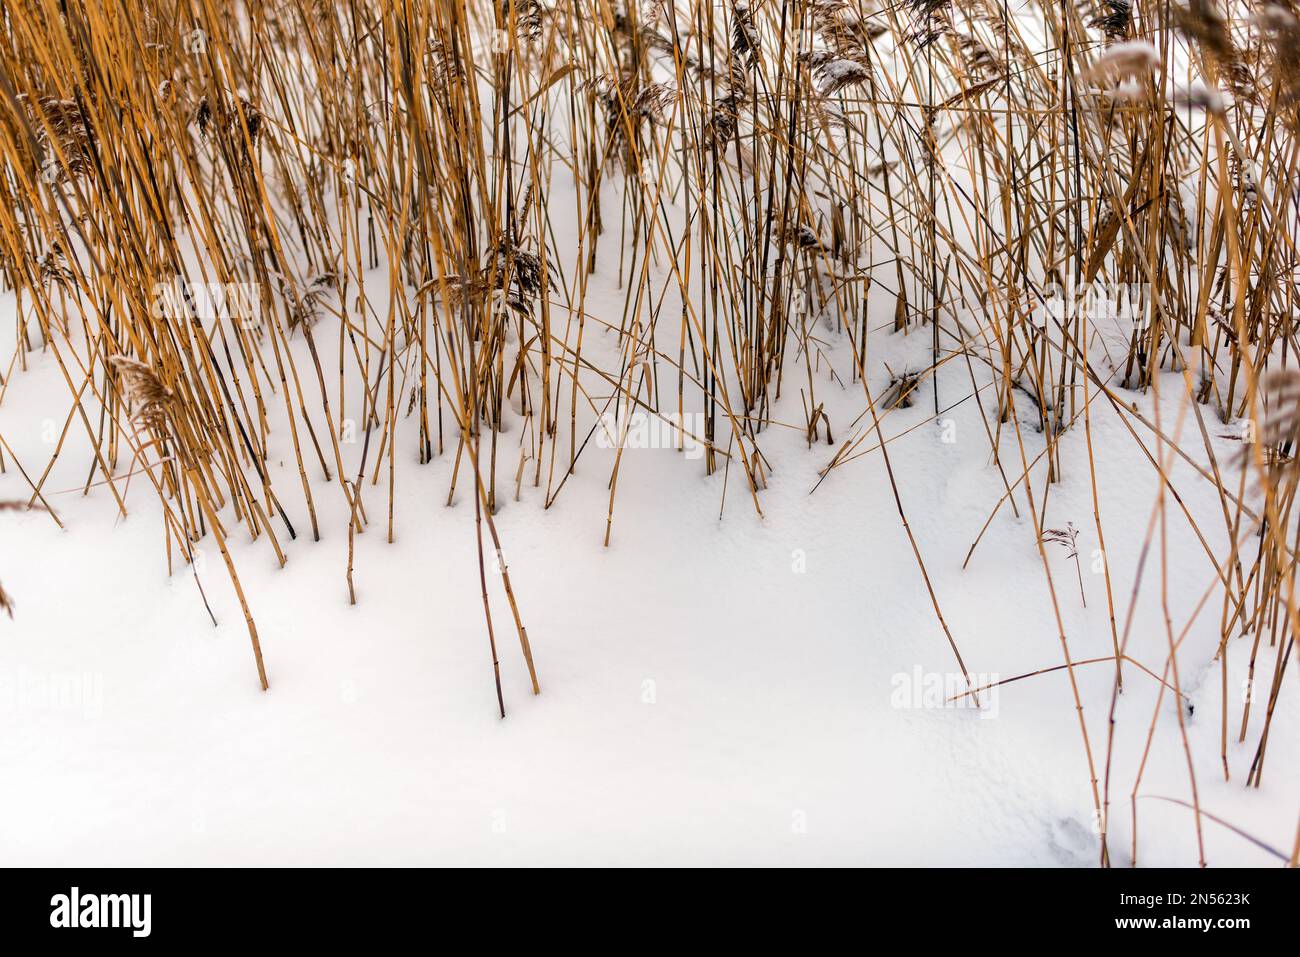 In inverno sul lago crescono gambi asciutti e gialli luminosi di canneti d'erba bianca al freddo. Foto Stock